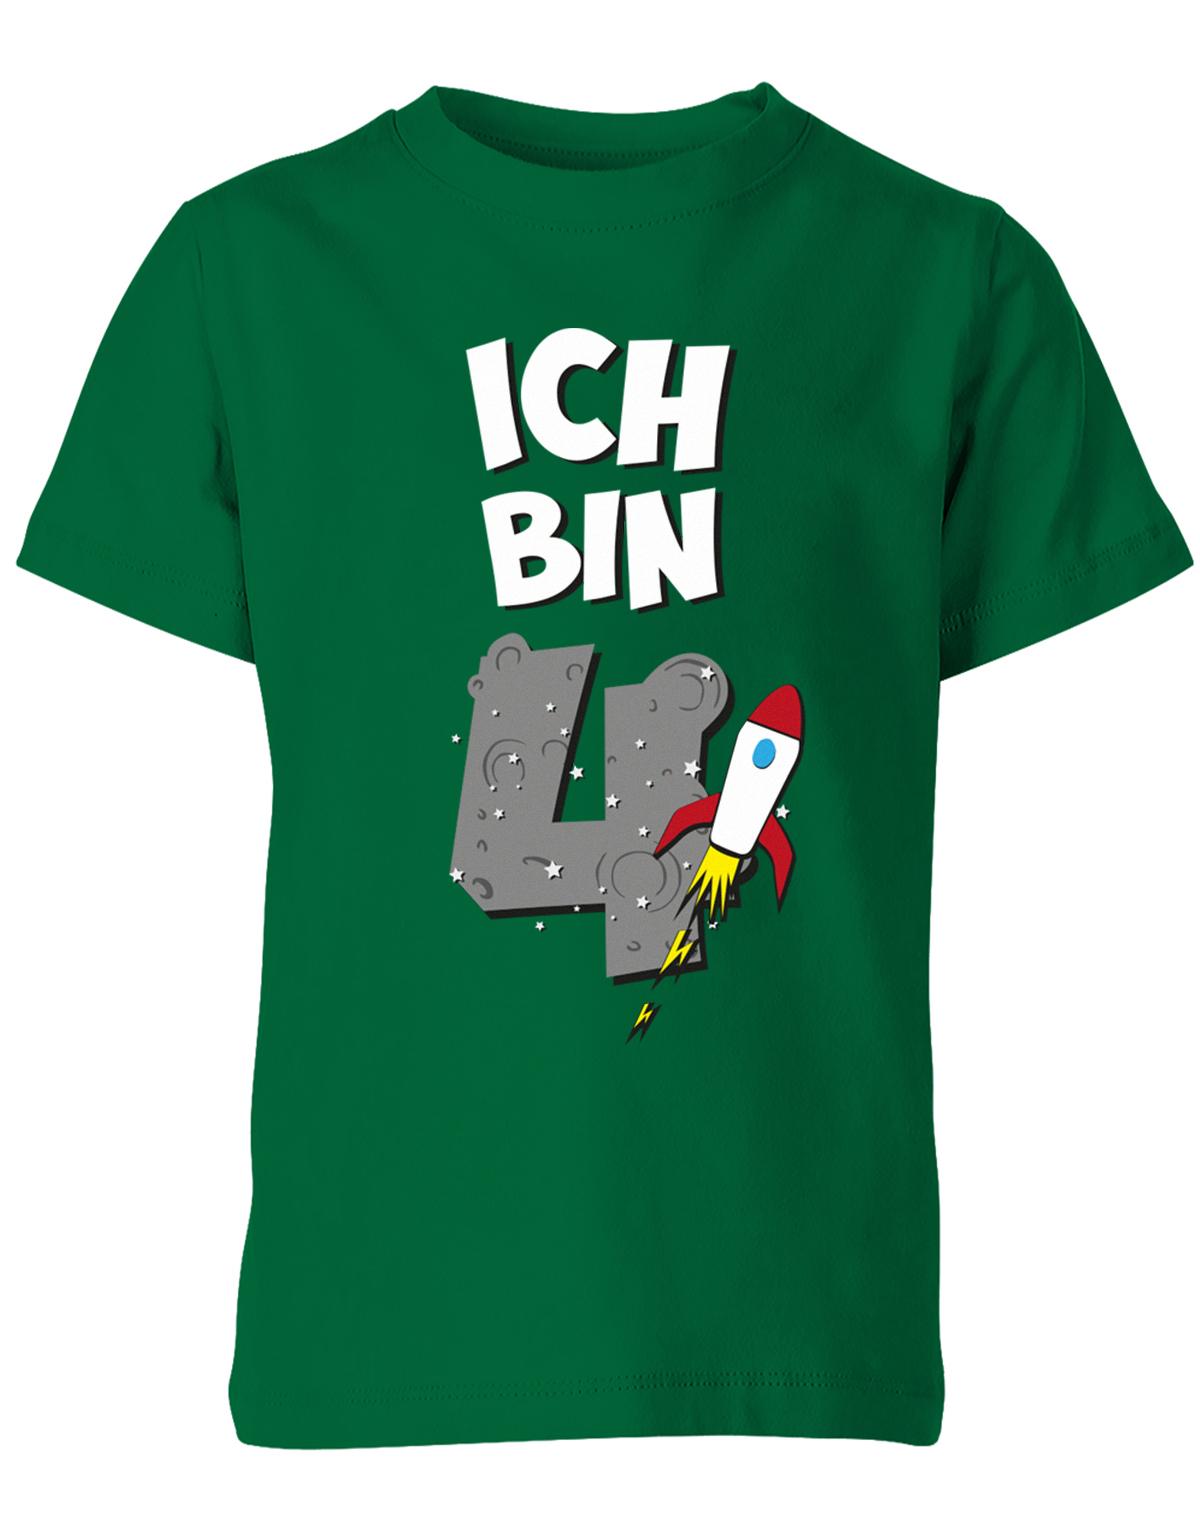 ich-bin-4-weltraum-rakete-planet-geburtstag-kinder-shirt-gruen